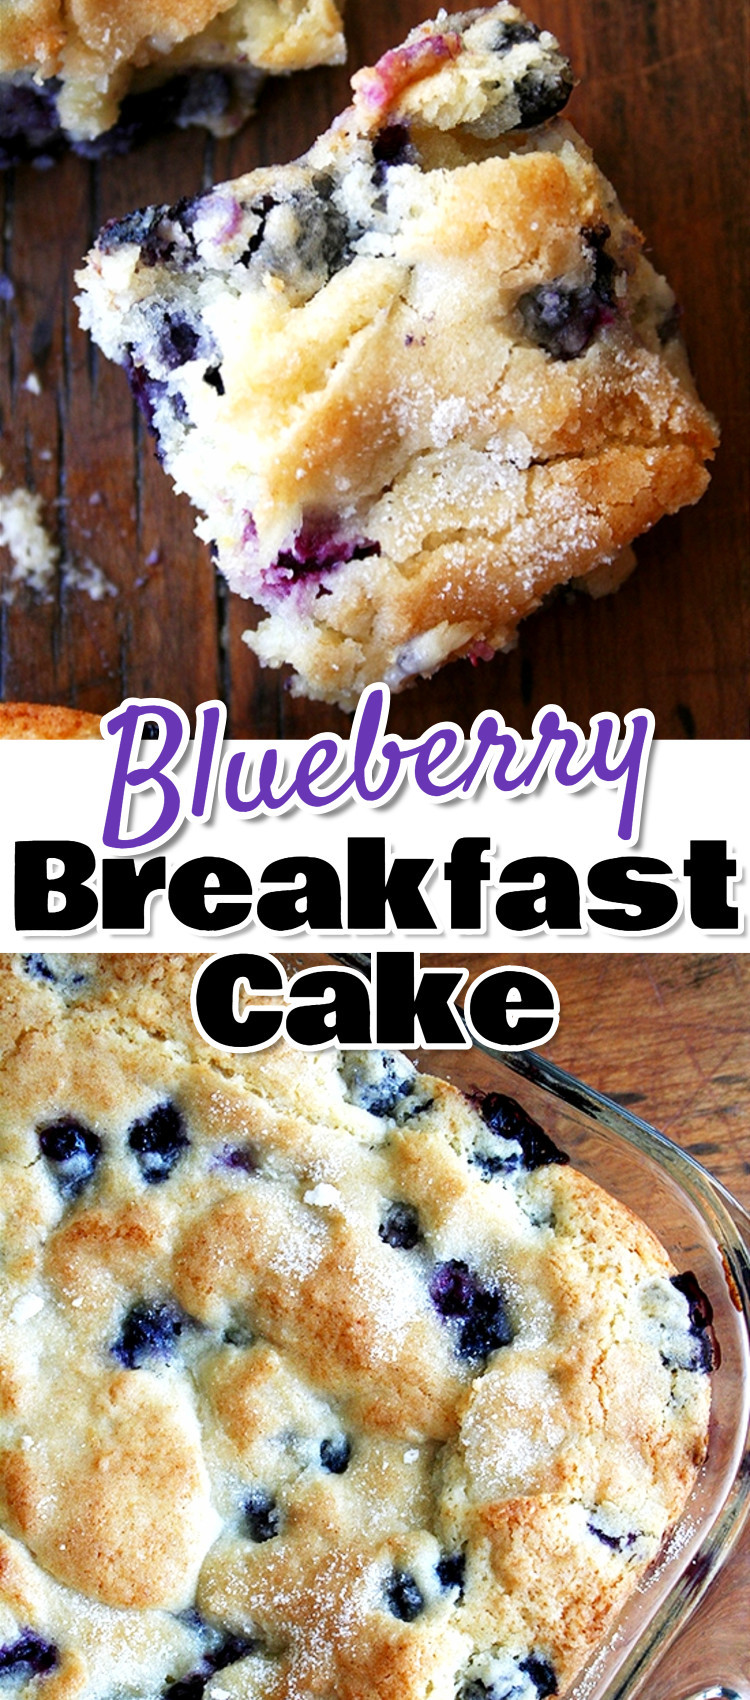 Breakfast Brunch Recipes
 7 Easy Brunch Recipes For a Crowd Breakfast Bundt Cake